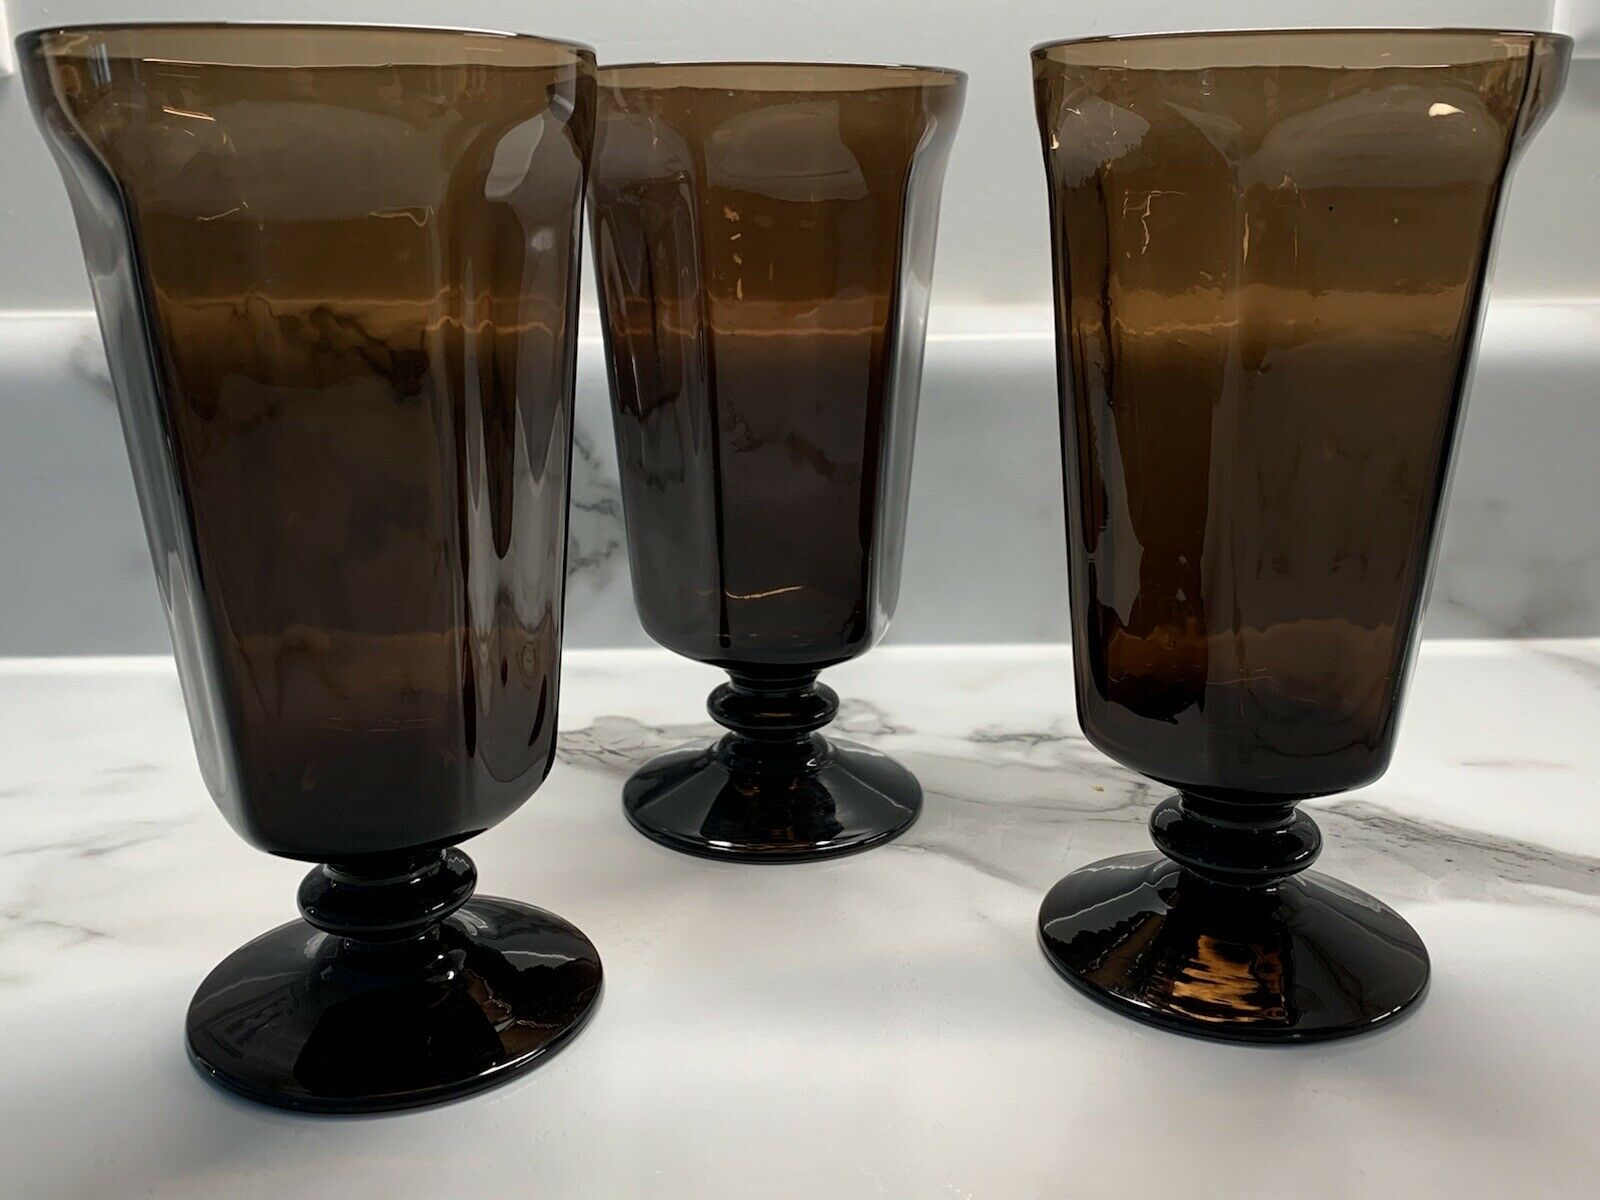 Signed Lenox Amber Brown Wine Drinking Glass Stemmed Goblet Cup Vintage Set Of 3